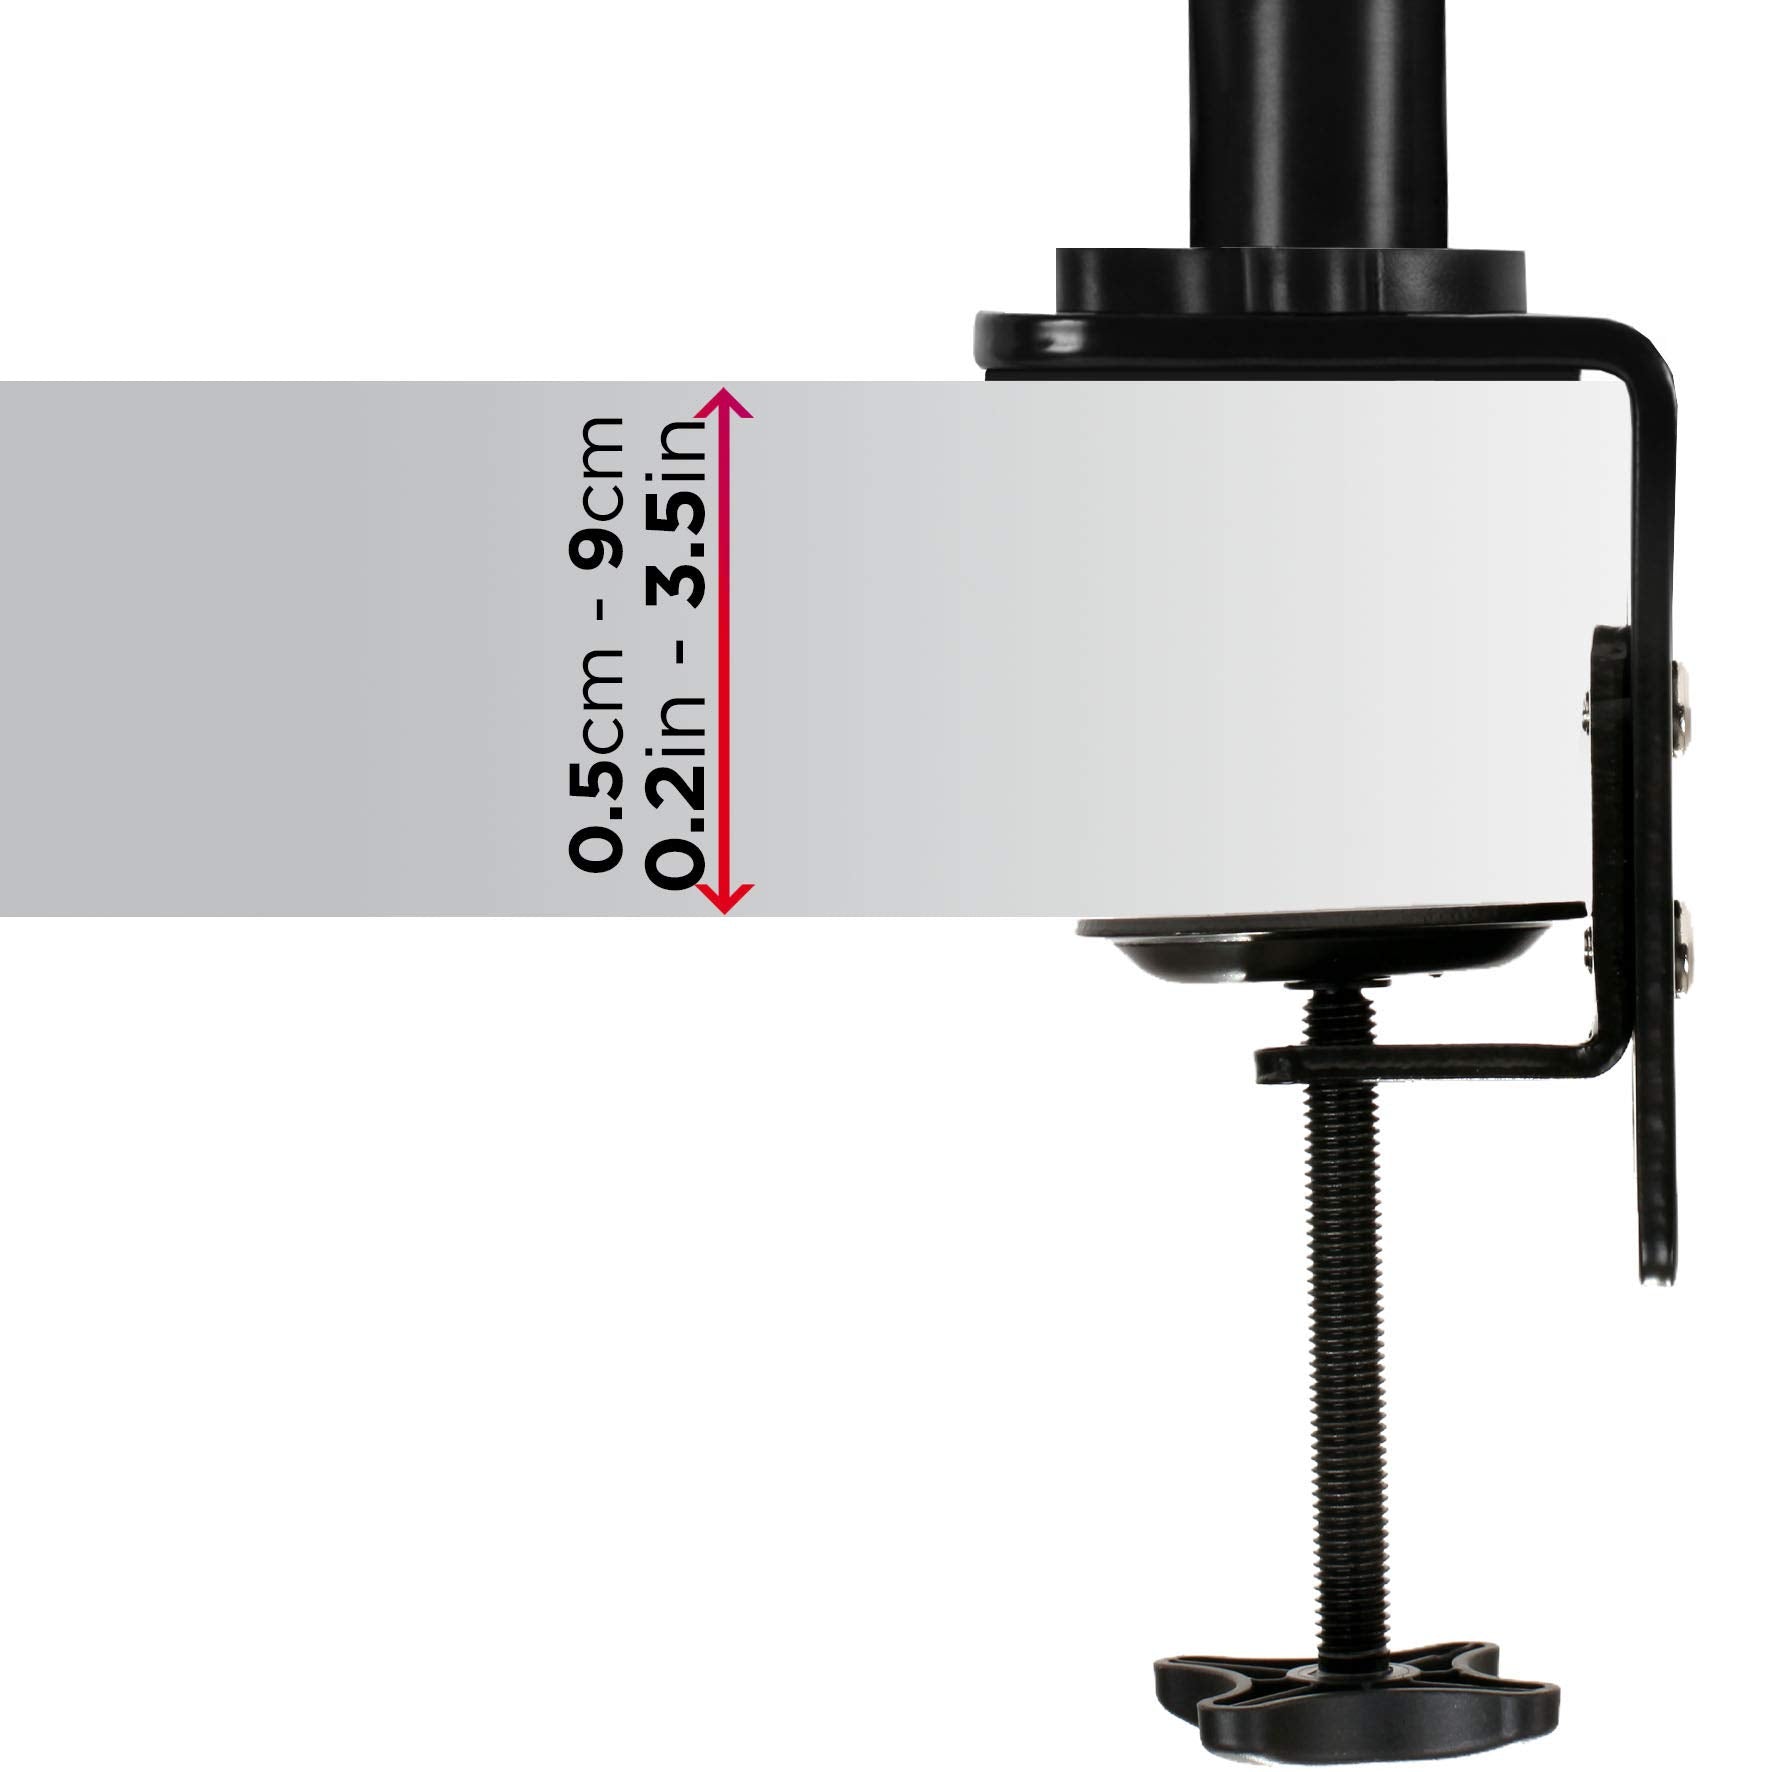 Duronic DMGM5X1 Support de moniteur | 1 écran entre 15 et 32 pouces | Lumière d'ambiance LED rouge | Hauteur ajustable | VESA 75/100 | 8 kg | Bras à gaz | Flexibilité de pivot, rotation et inclinaison